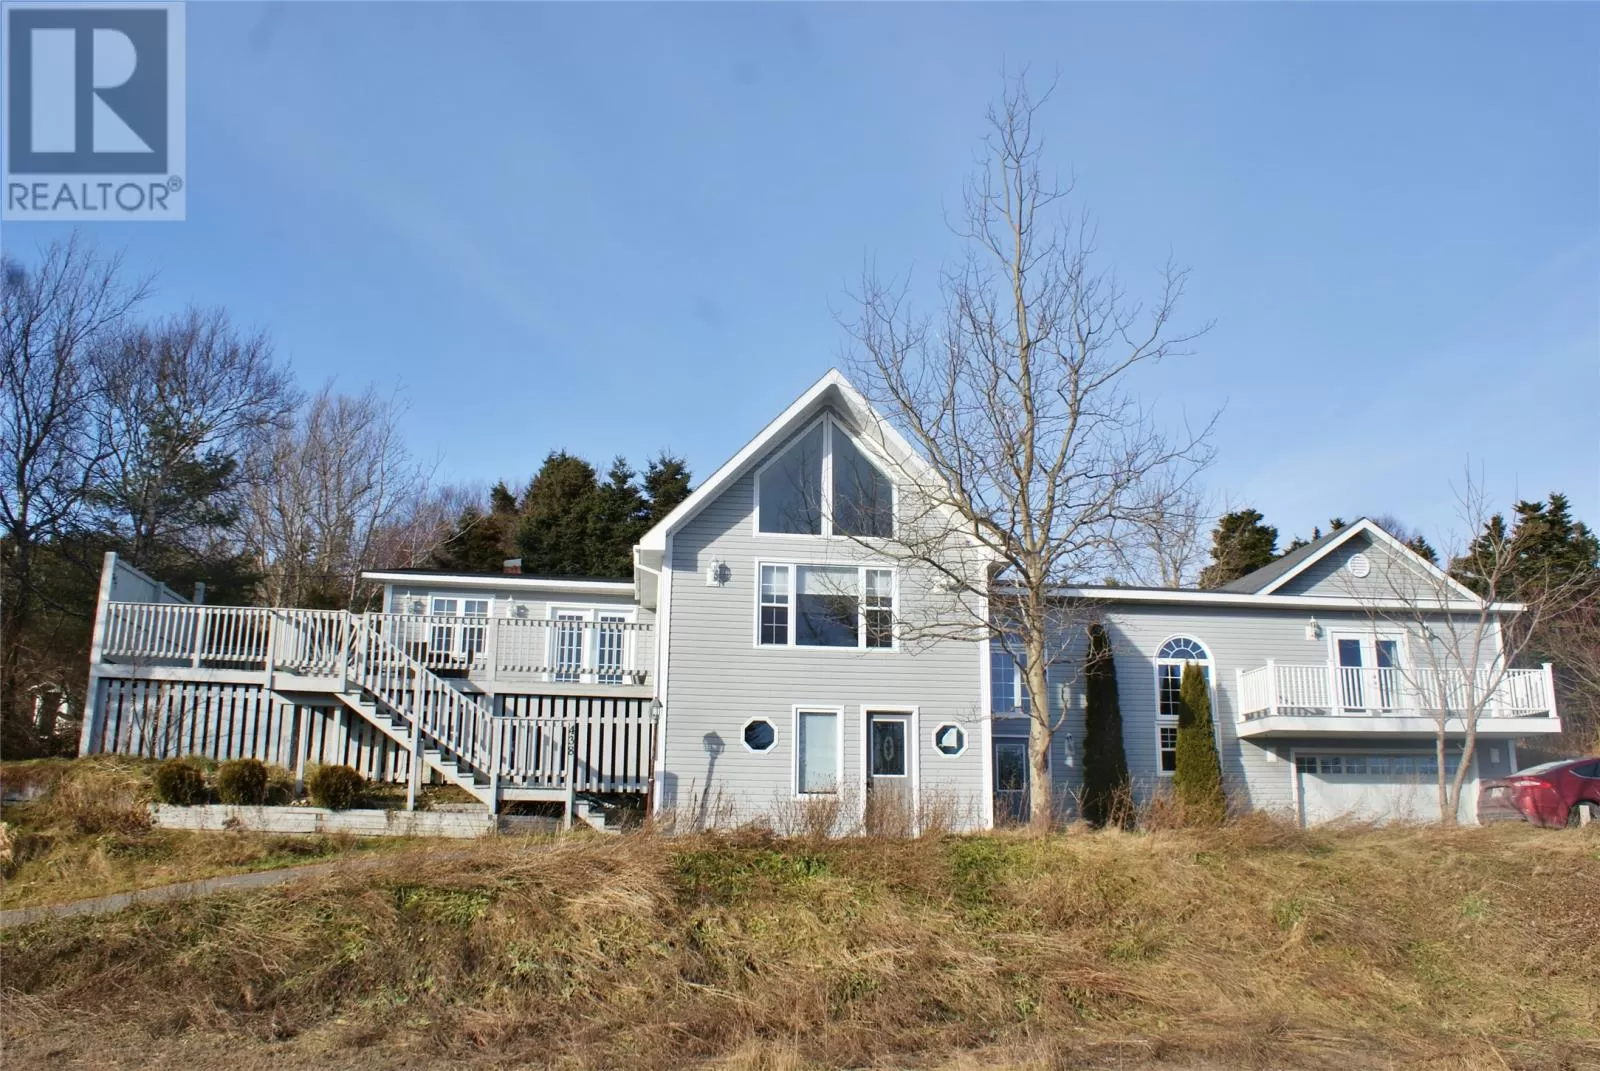 House for rent: 438 Main Street, Big Salmonier, Newfoundland & Labrador A0E 2G0